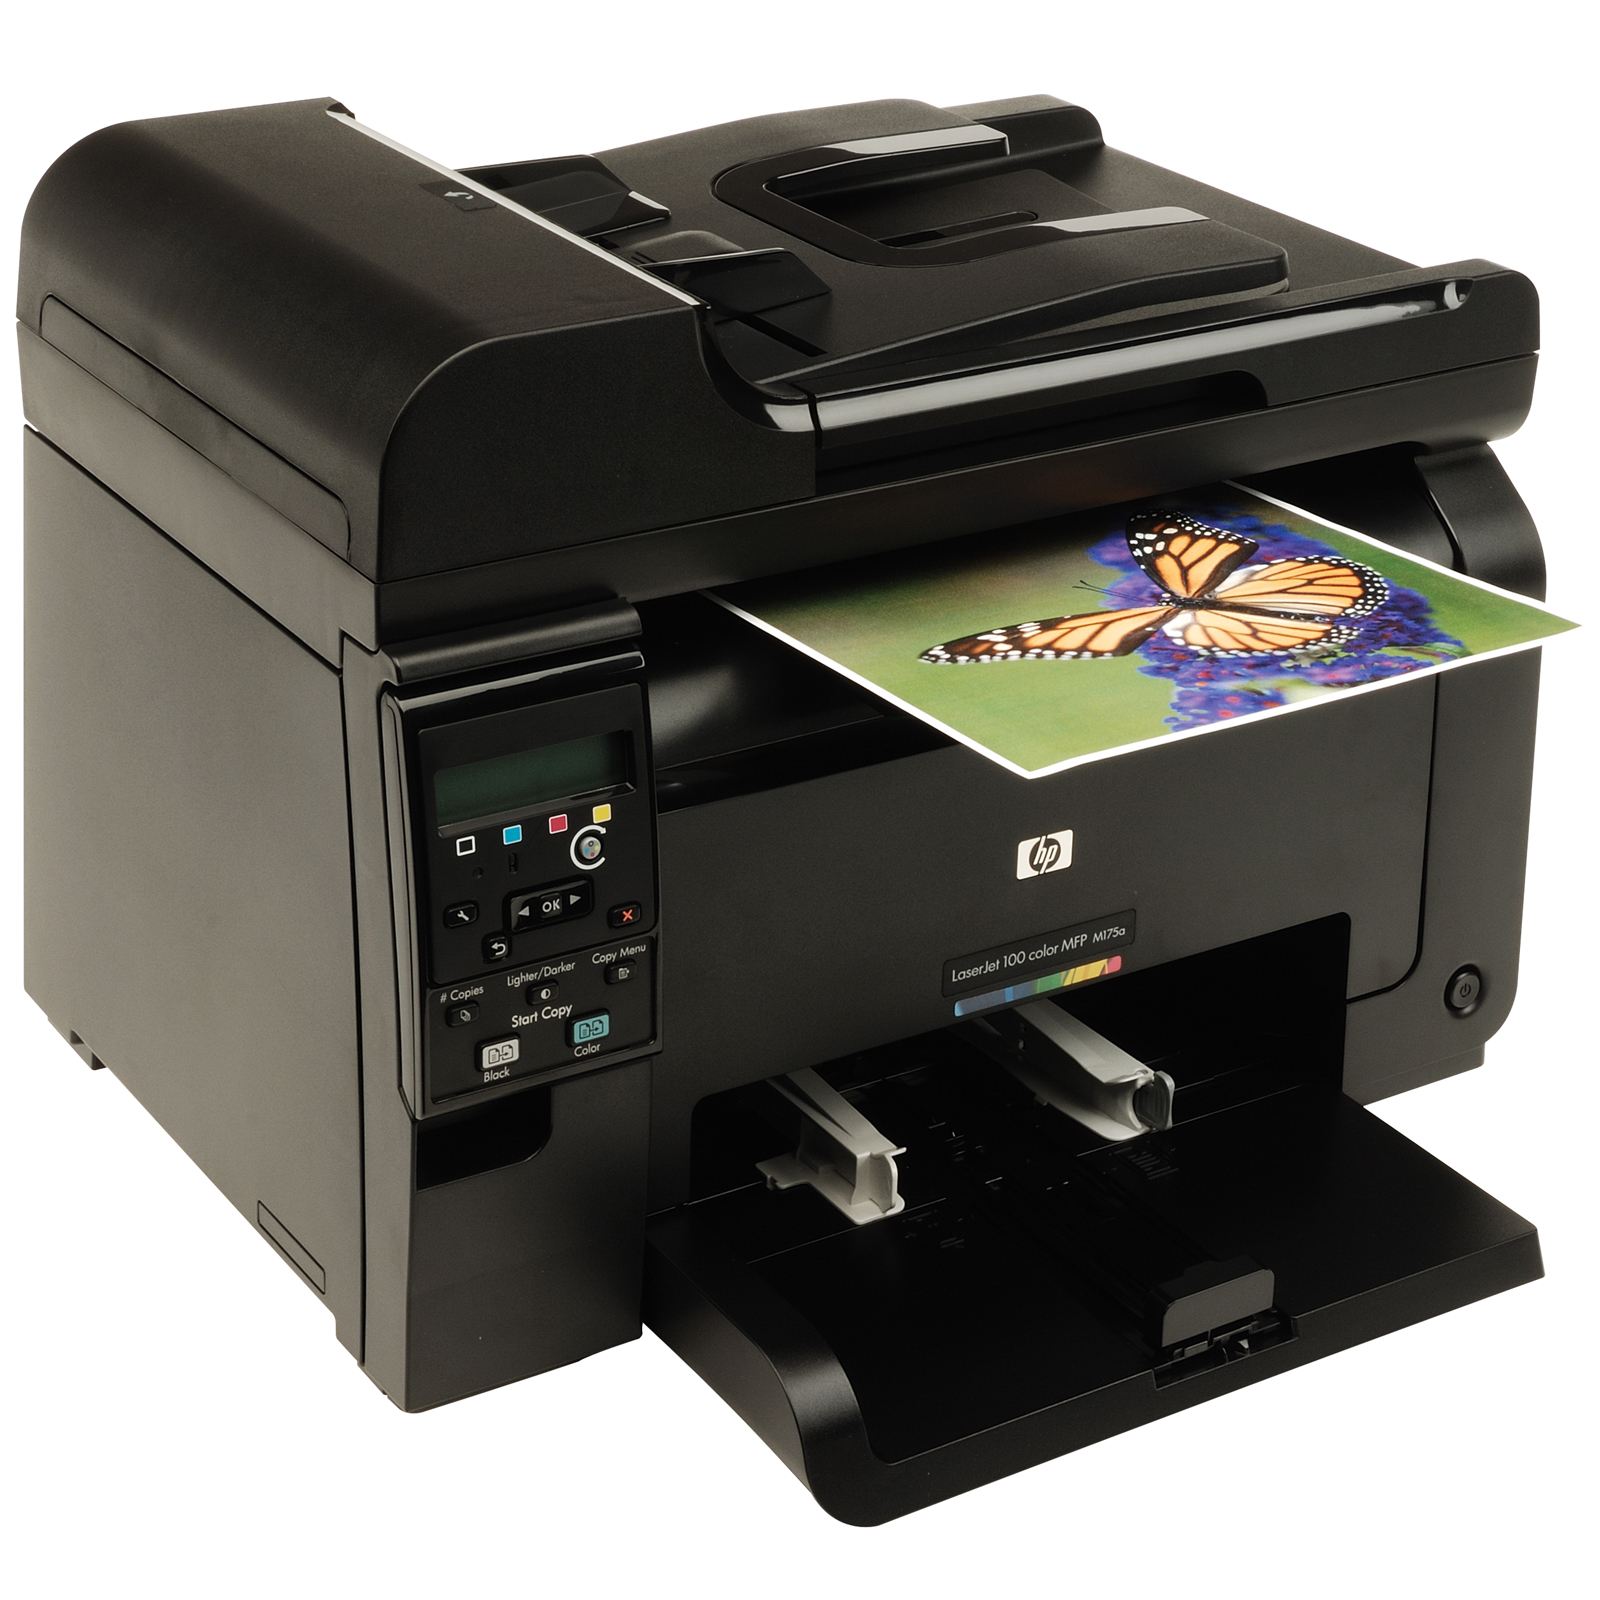 Лазерный принтер м. LASERJET Pro 100 Color MFP m175.